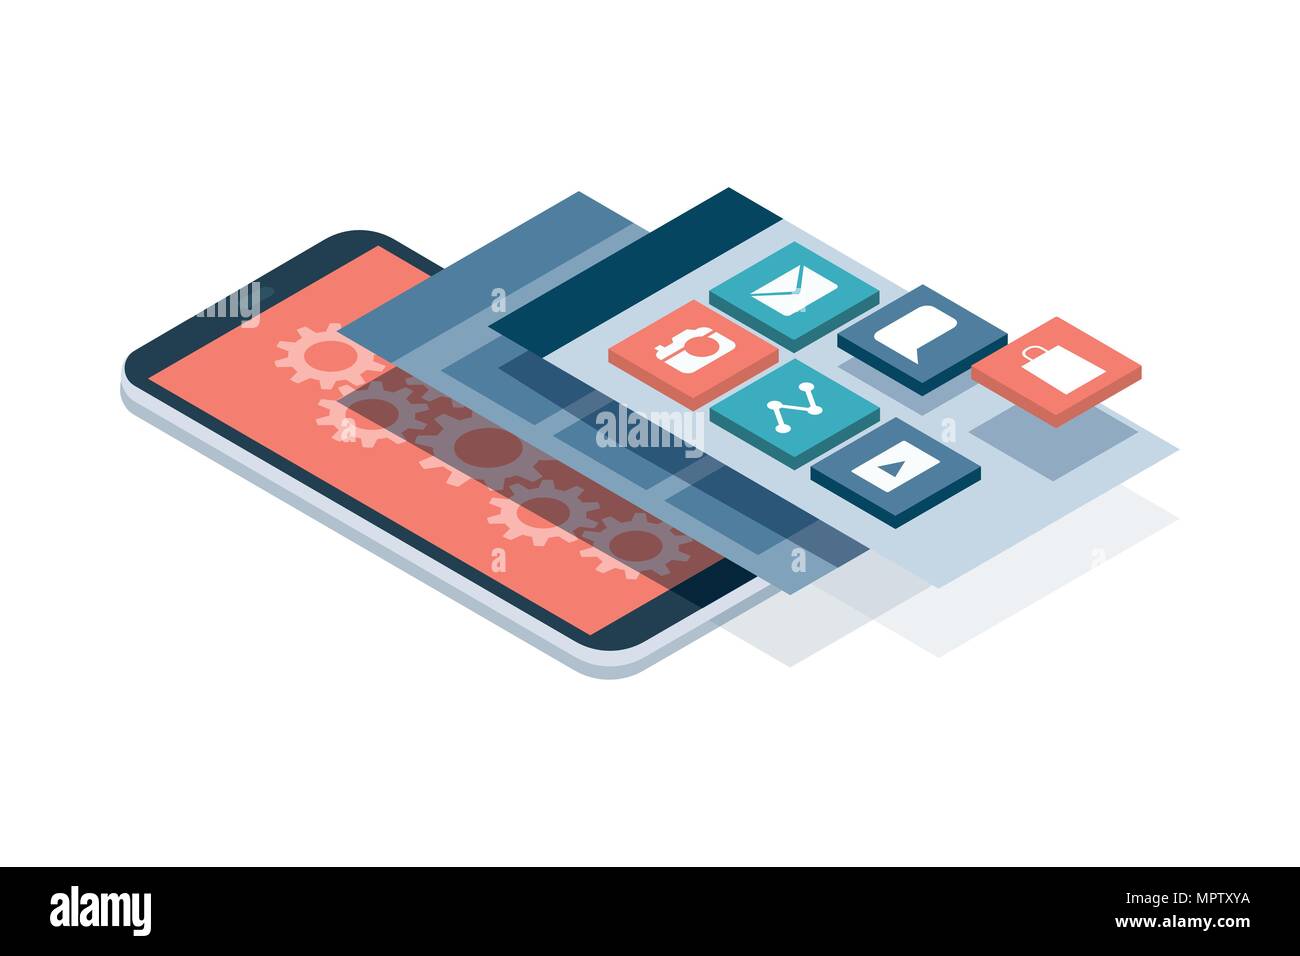 Diseño web y desarrollo de aplicaciones: capas de pantallas e interfaces de usuario de un smartphone con pantalla táctil Ilustración del Vector